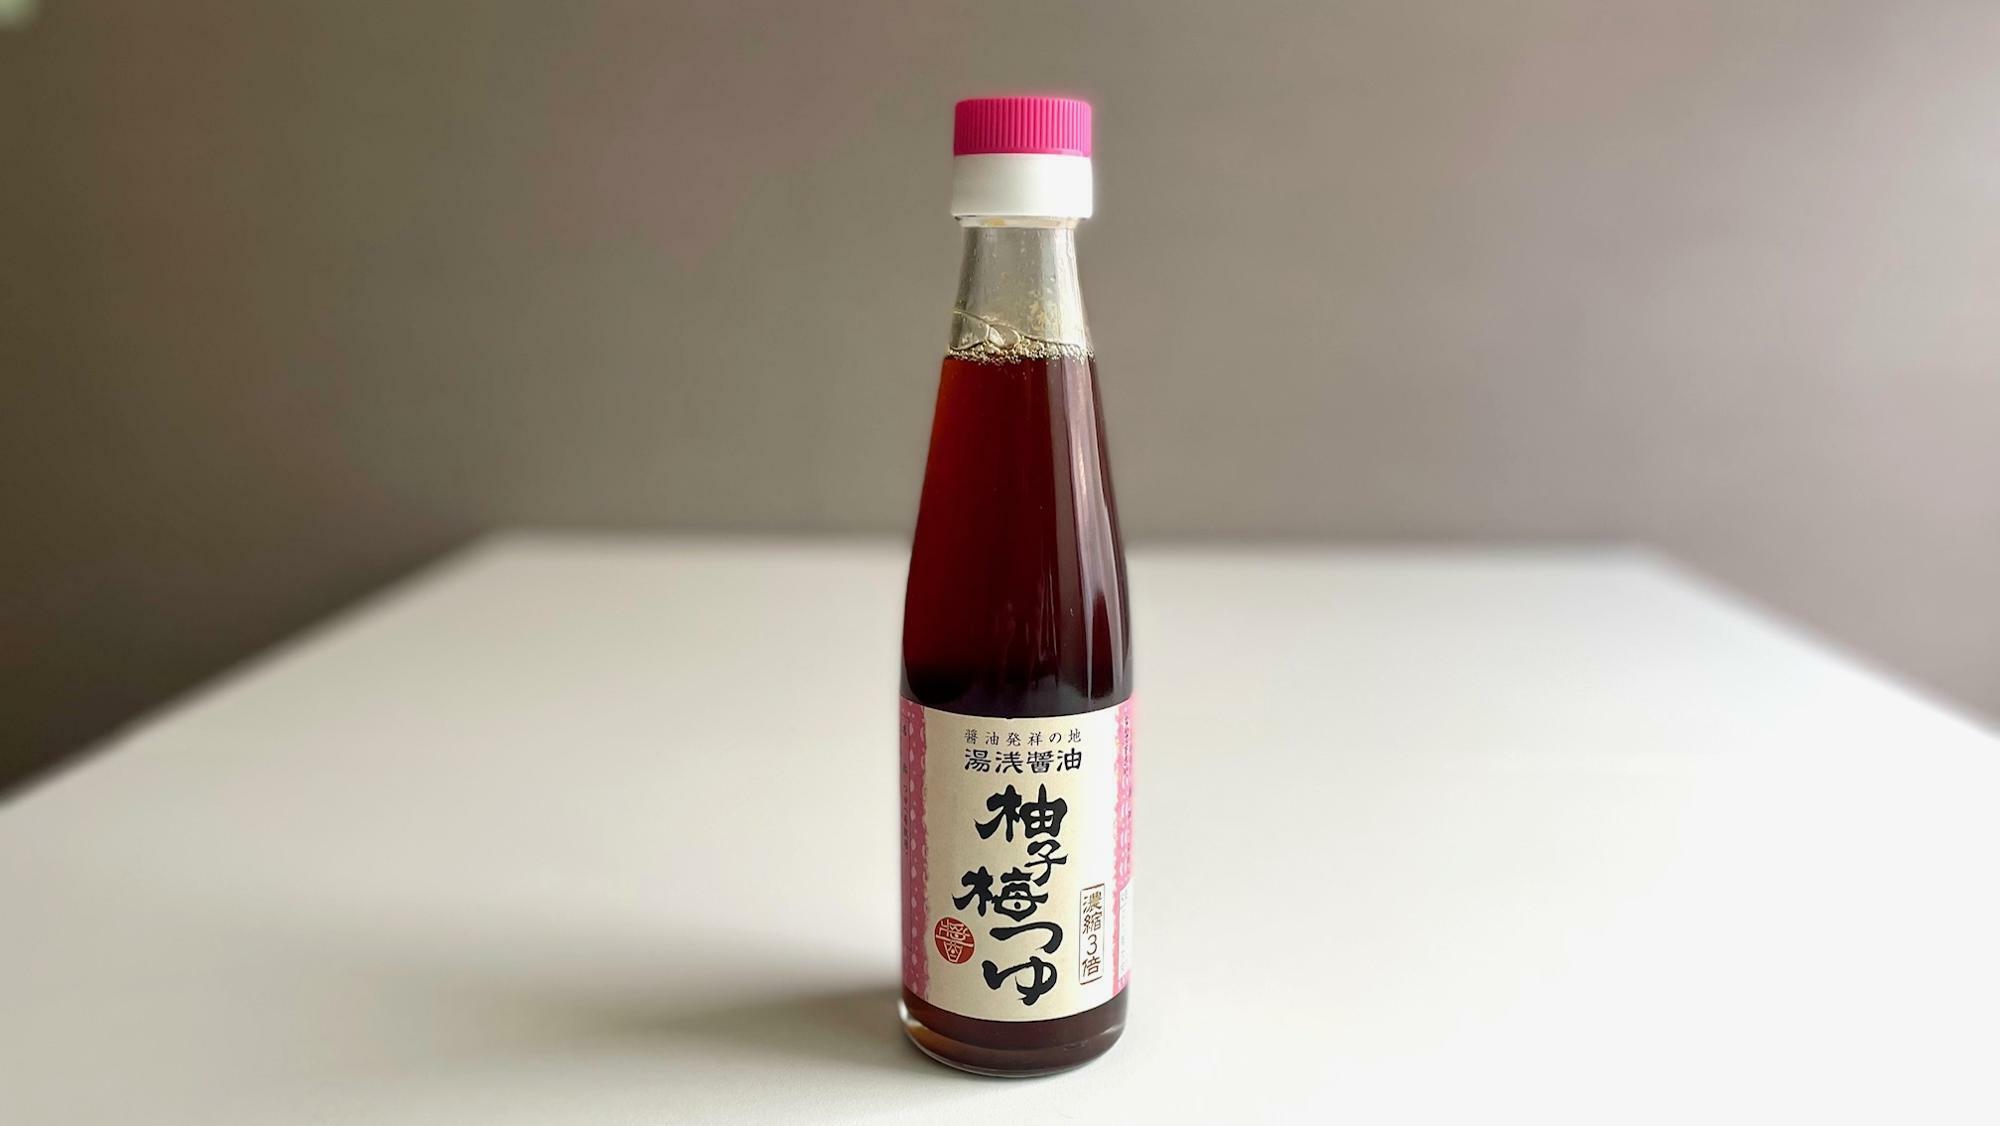 湯浅醤油 柚子梅つゆ 200ml ¥500(税抜)﻿